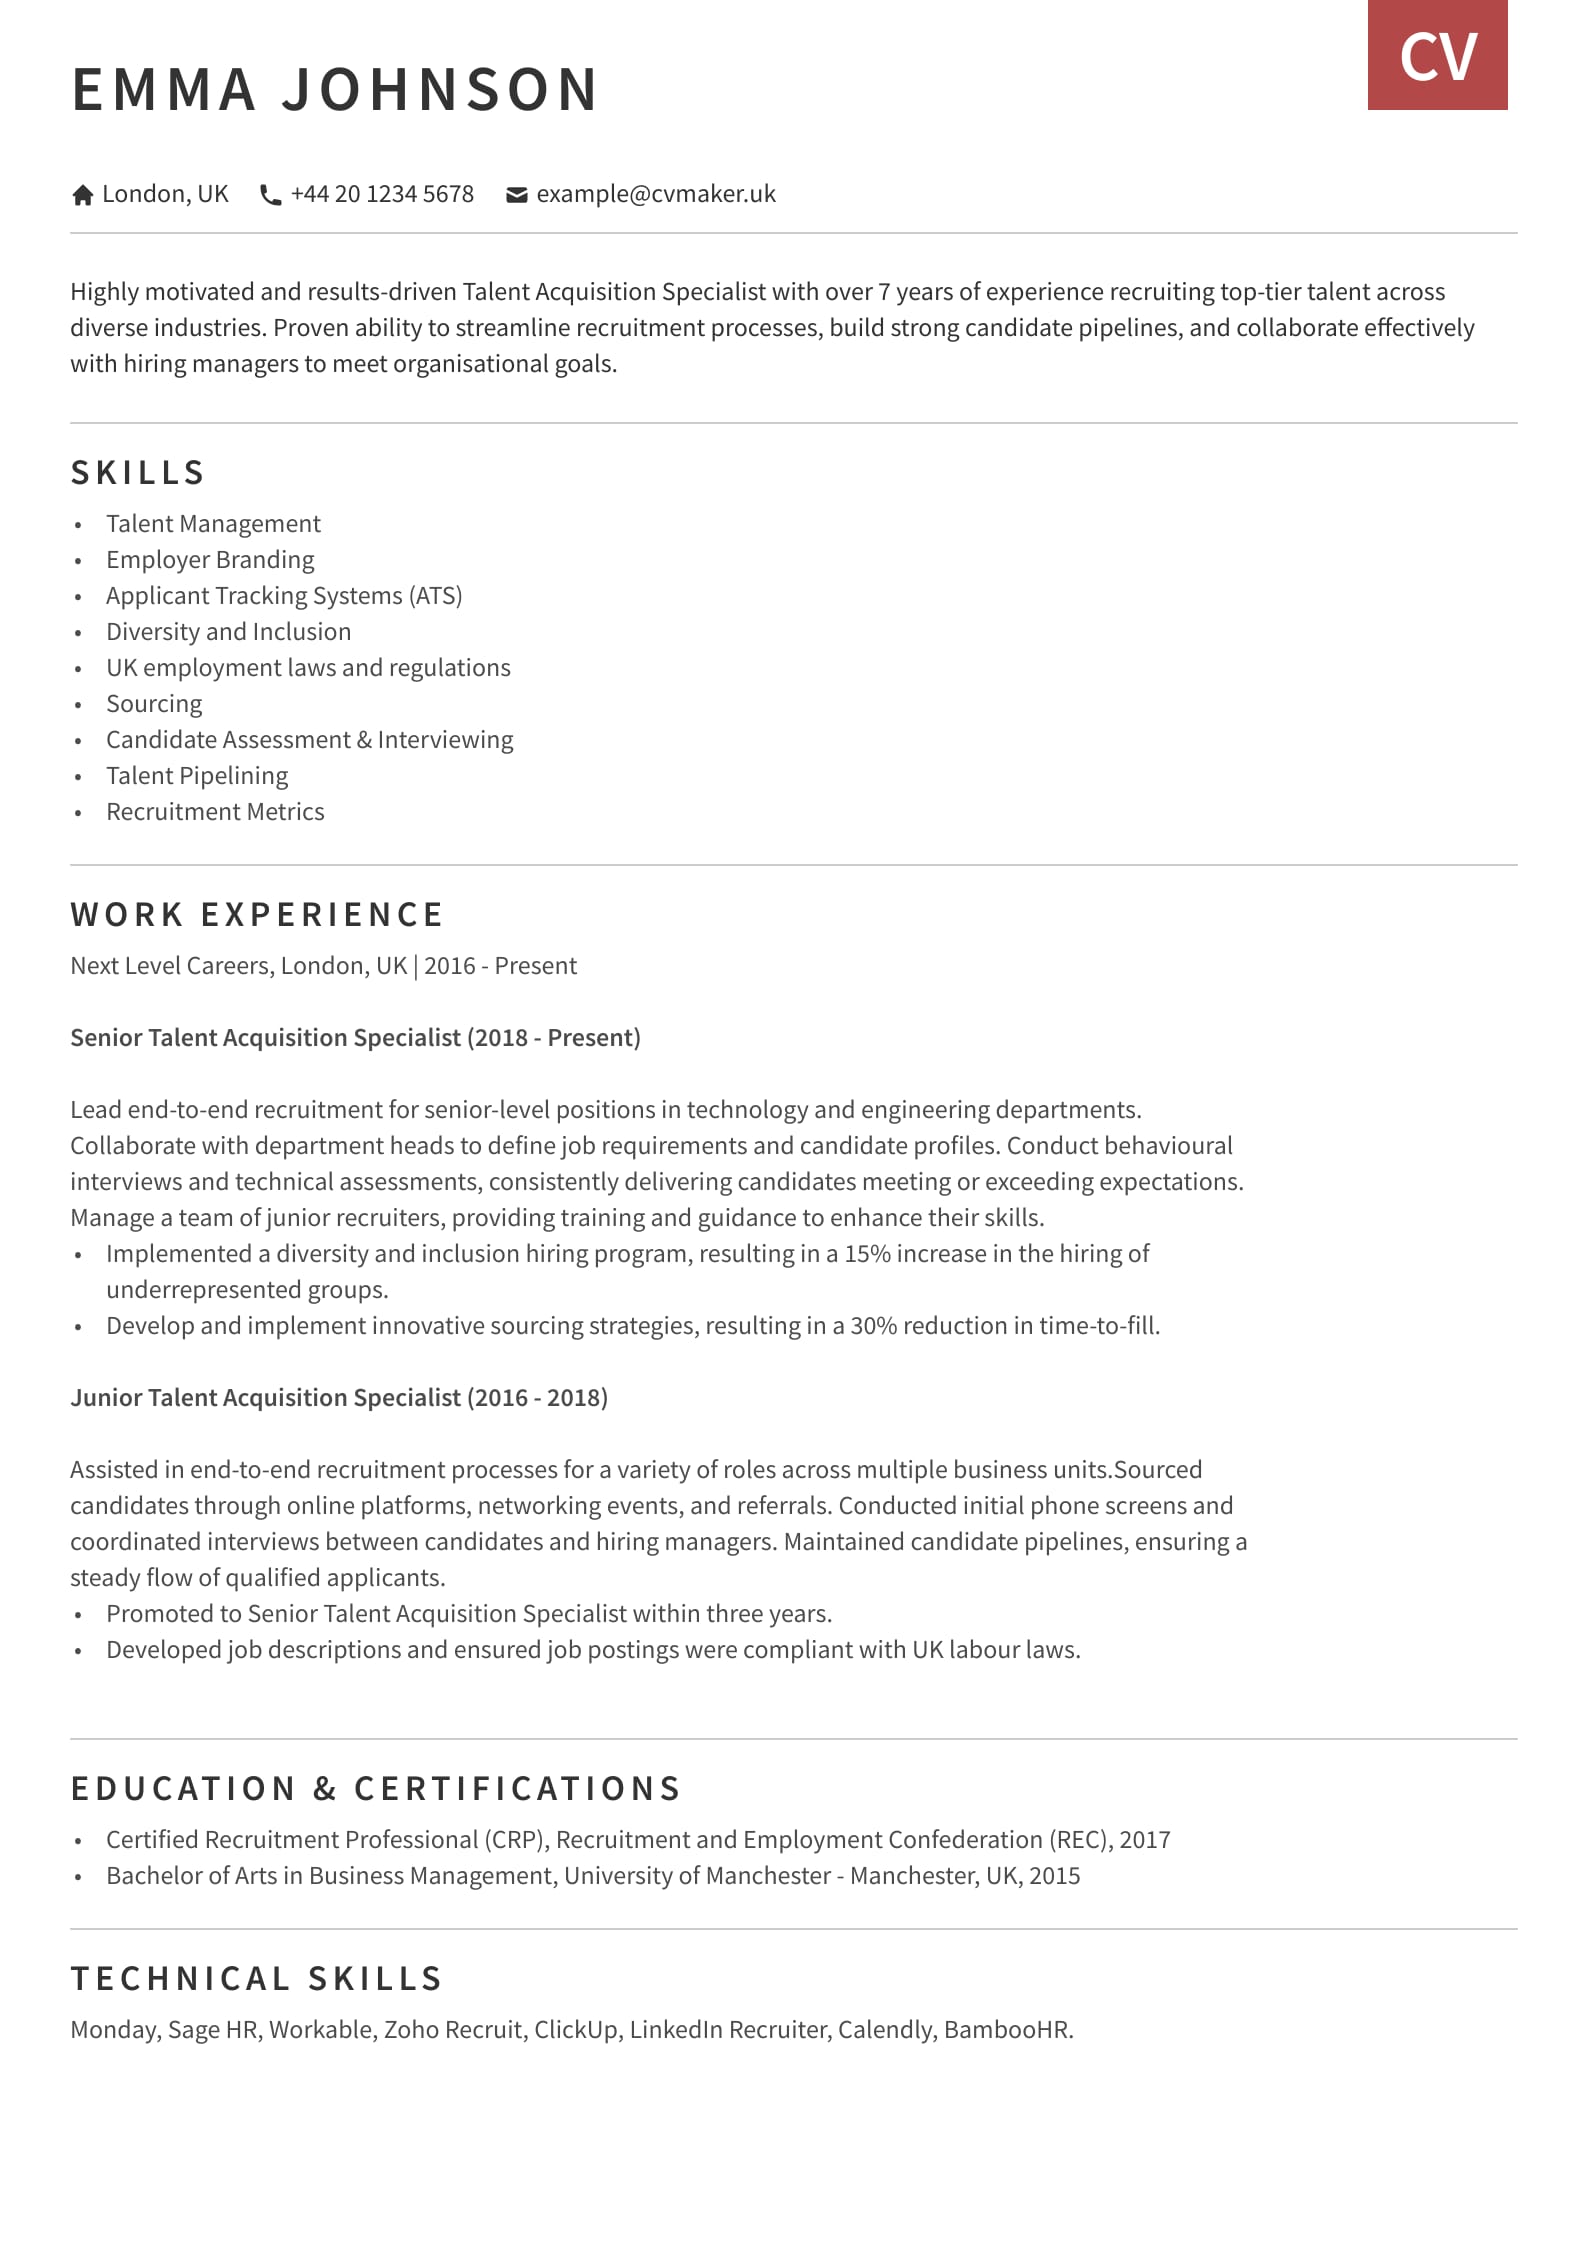 Talent Acquisition CV sample